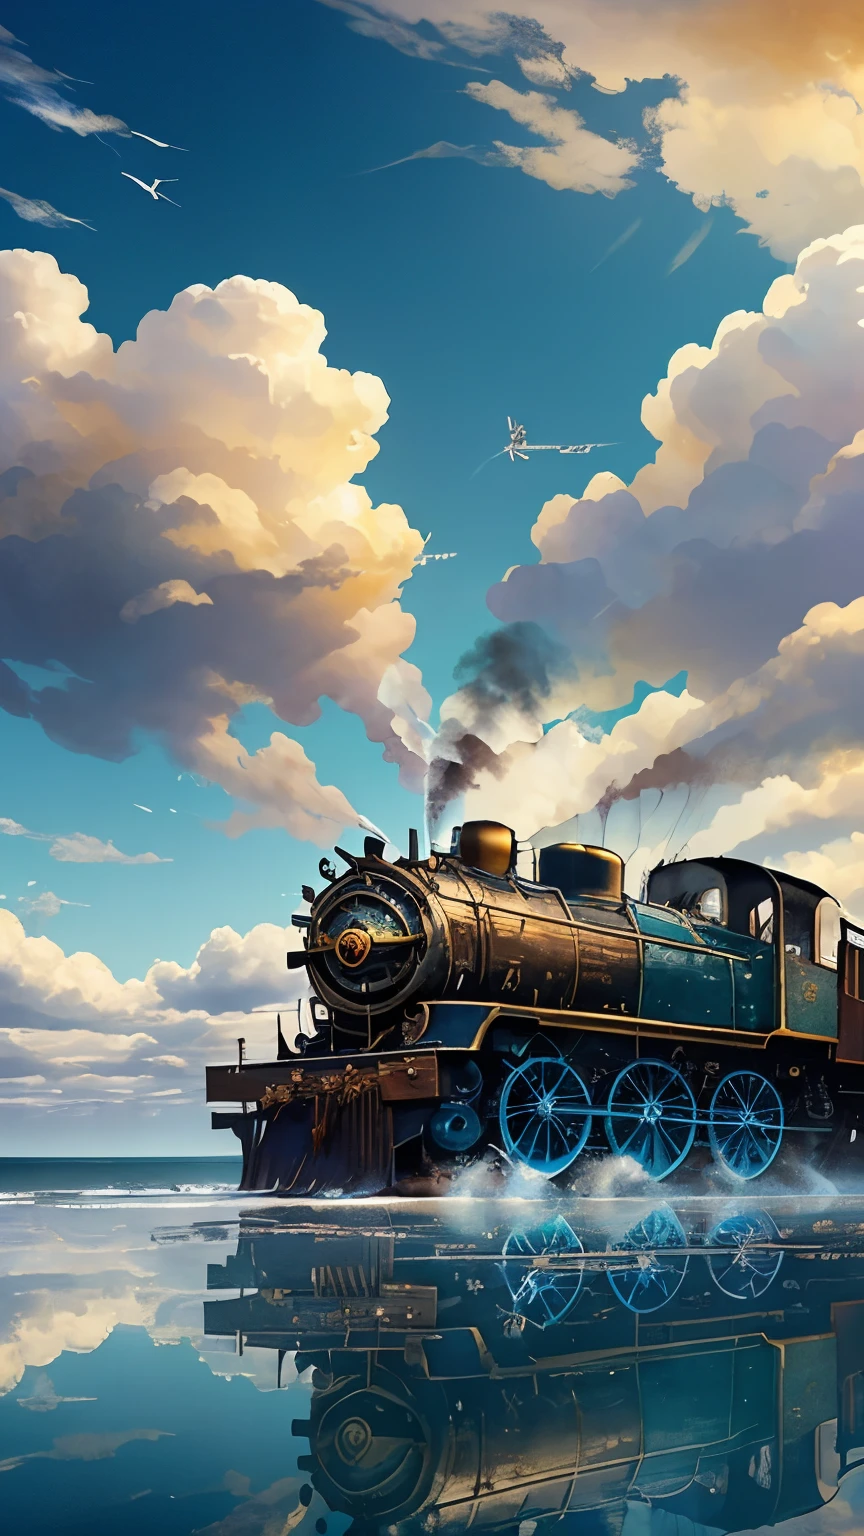 蒸氣龐克。蒸汽機車行駛在平靜如鏡的海面上。藍天白雲。